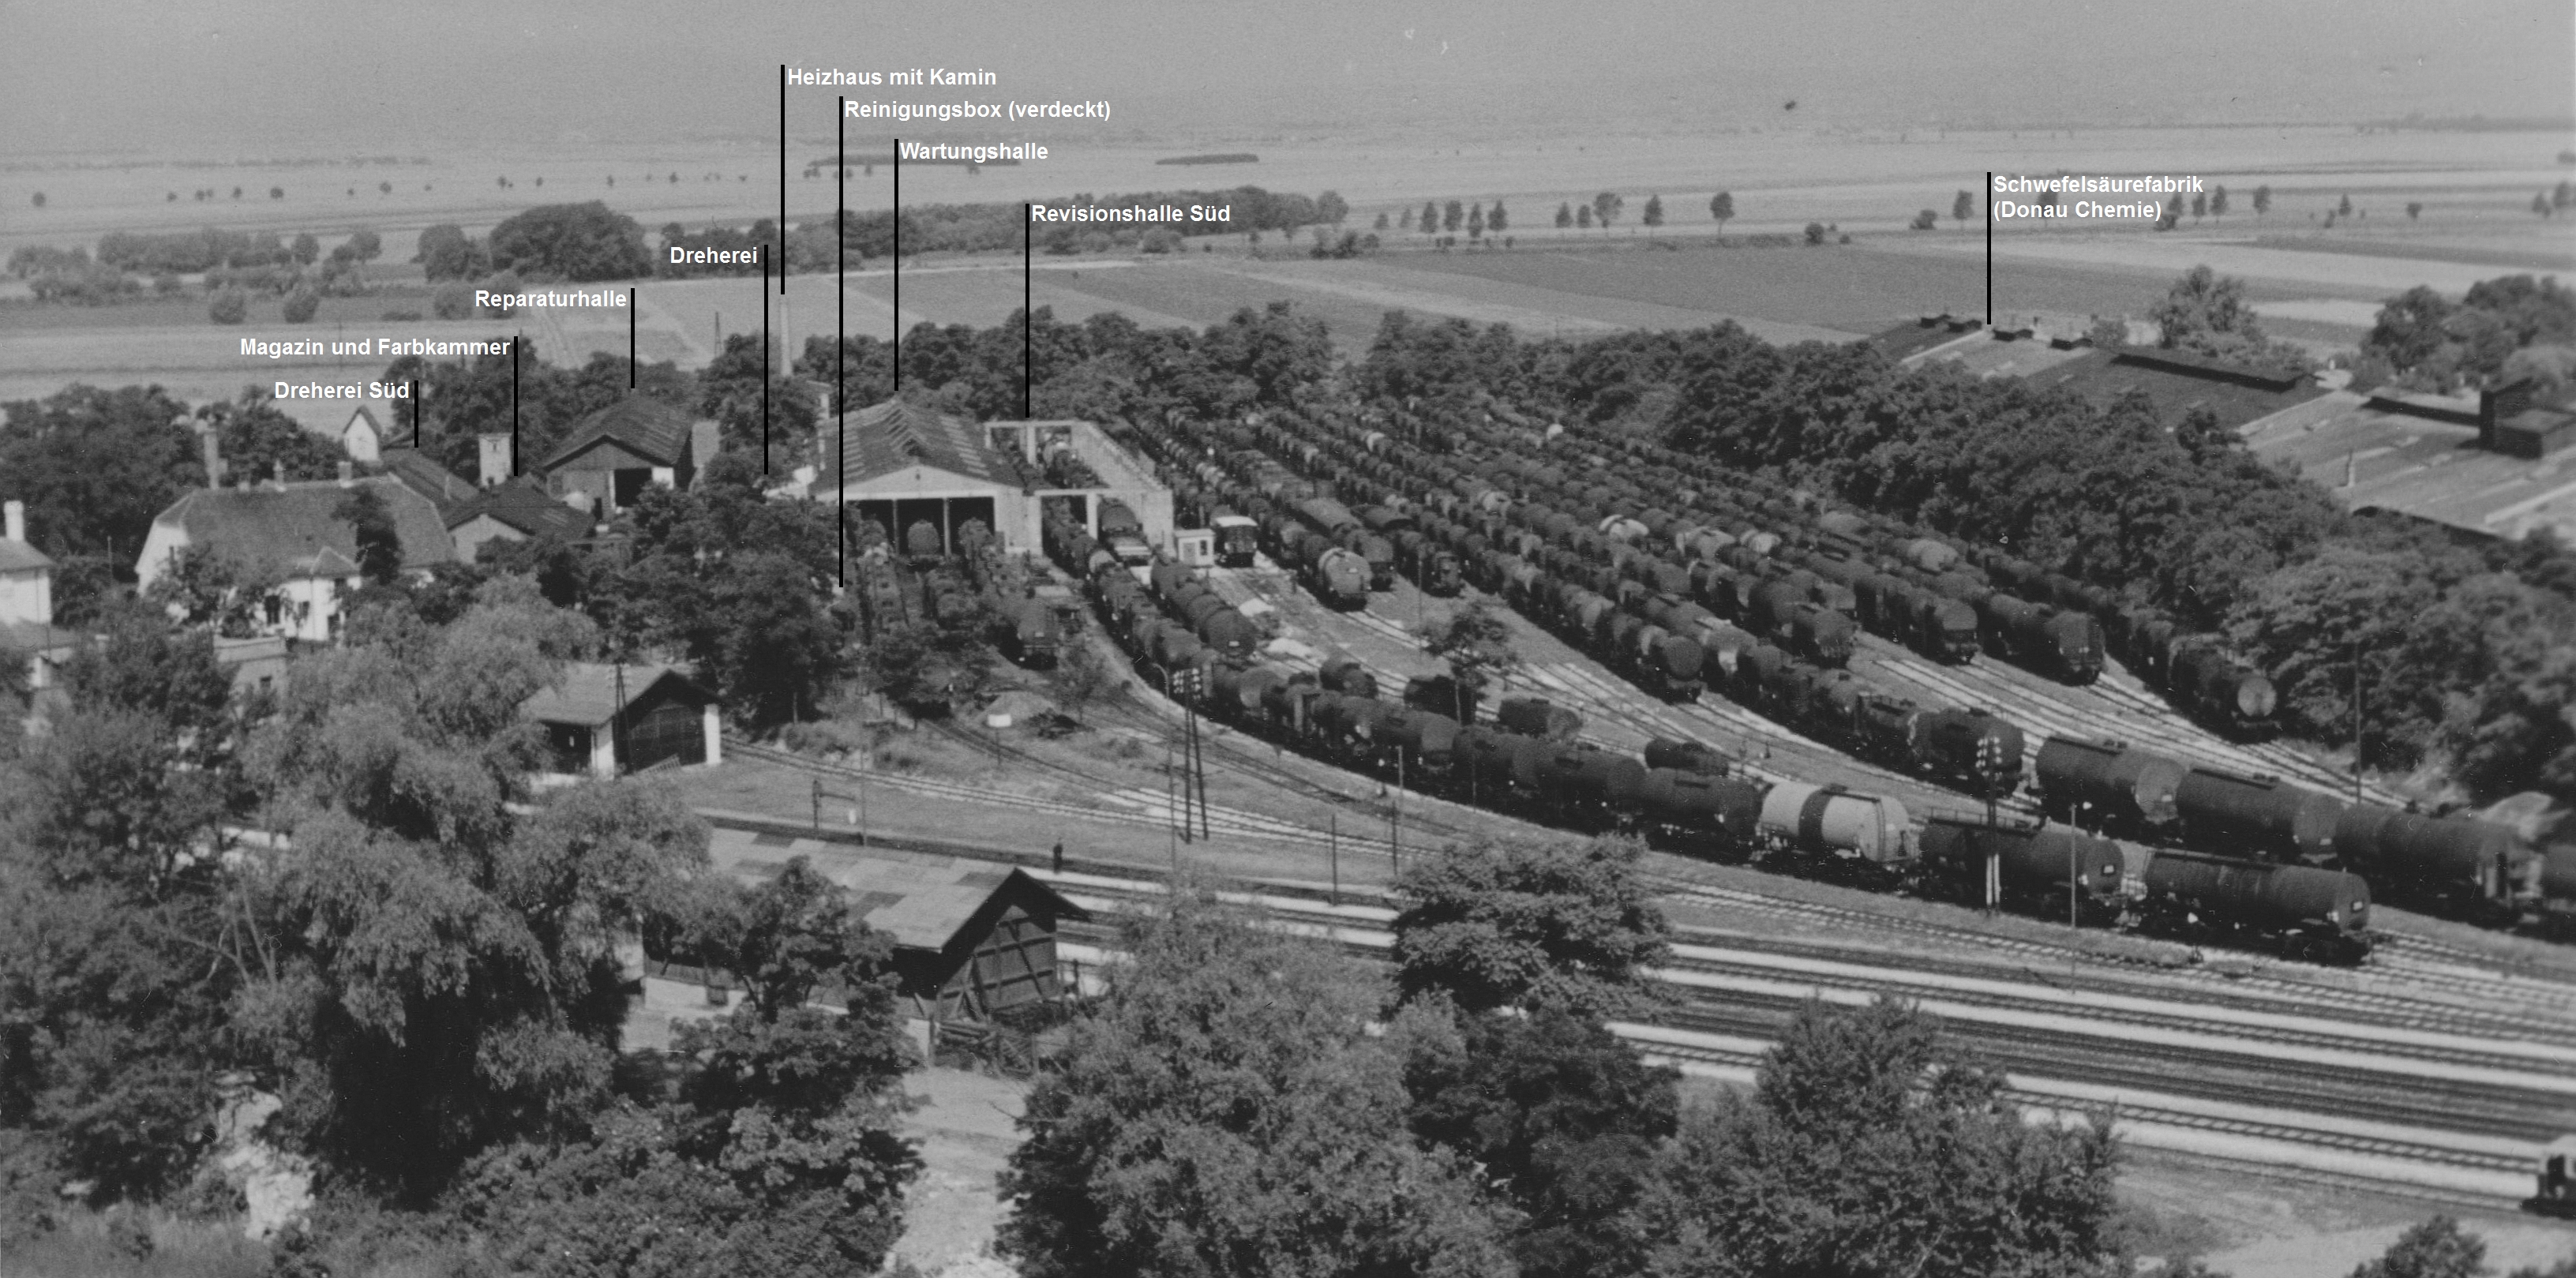 Foto des Altstandortes um 1950 (USIA-Verwaltung) mit Erläuterungen aus [1]. Quelle: [3]